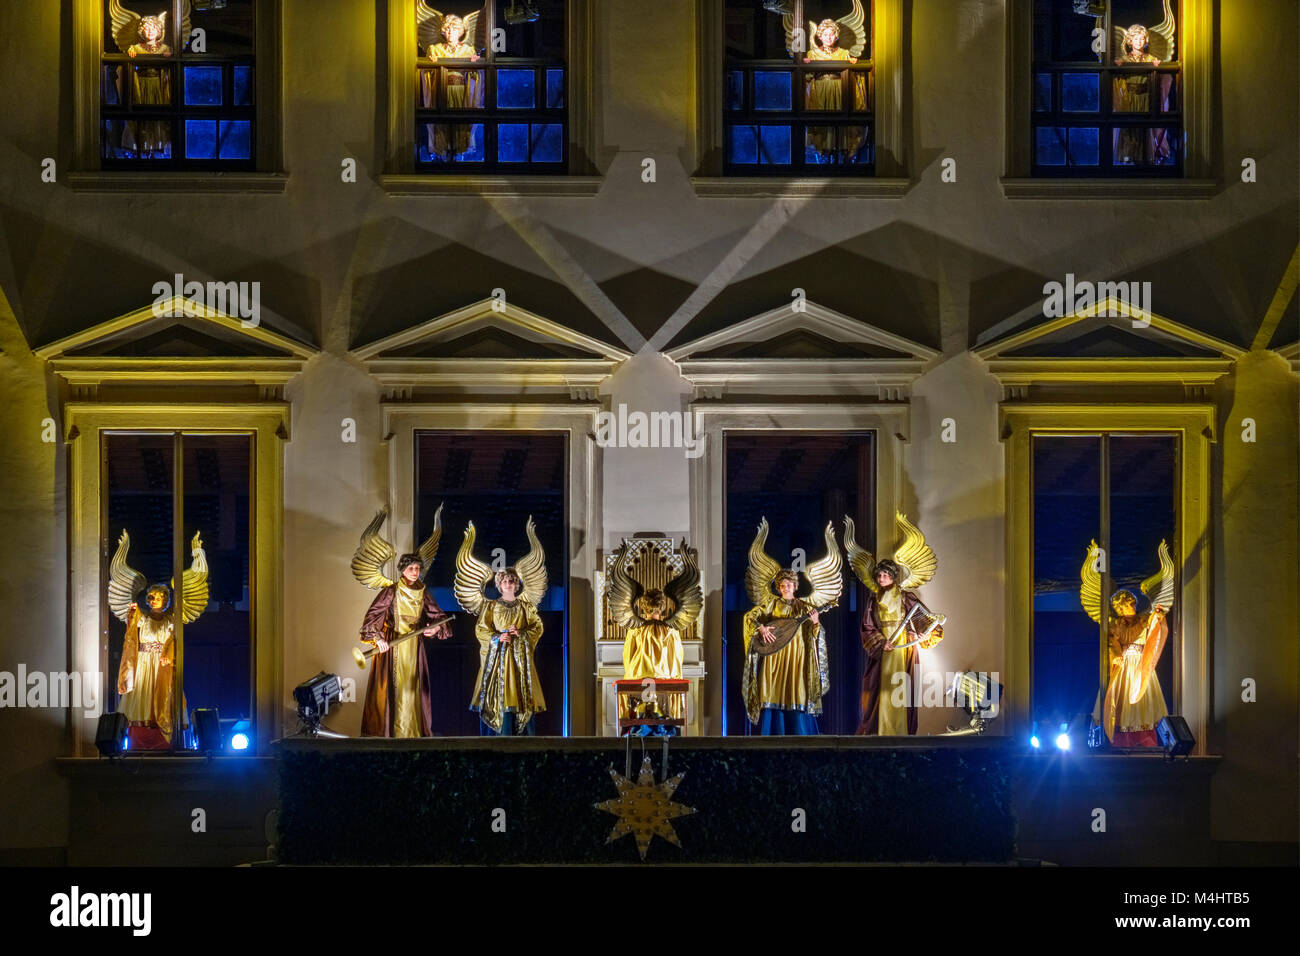 Angélique illuminés jouer à l'hôtel de ville par nuit, marché de Noël, Augsburg, souabe, Bavière, Allemagne Banque D'Images